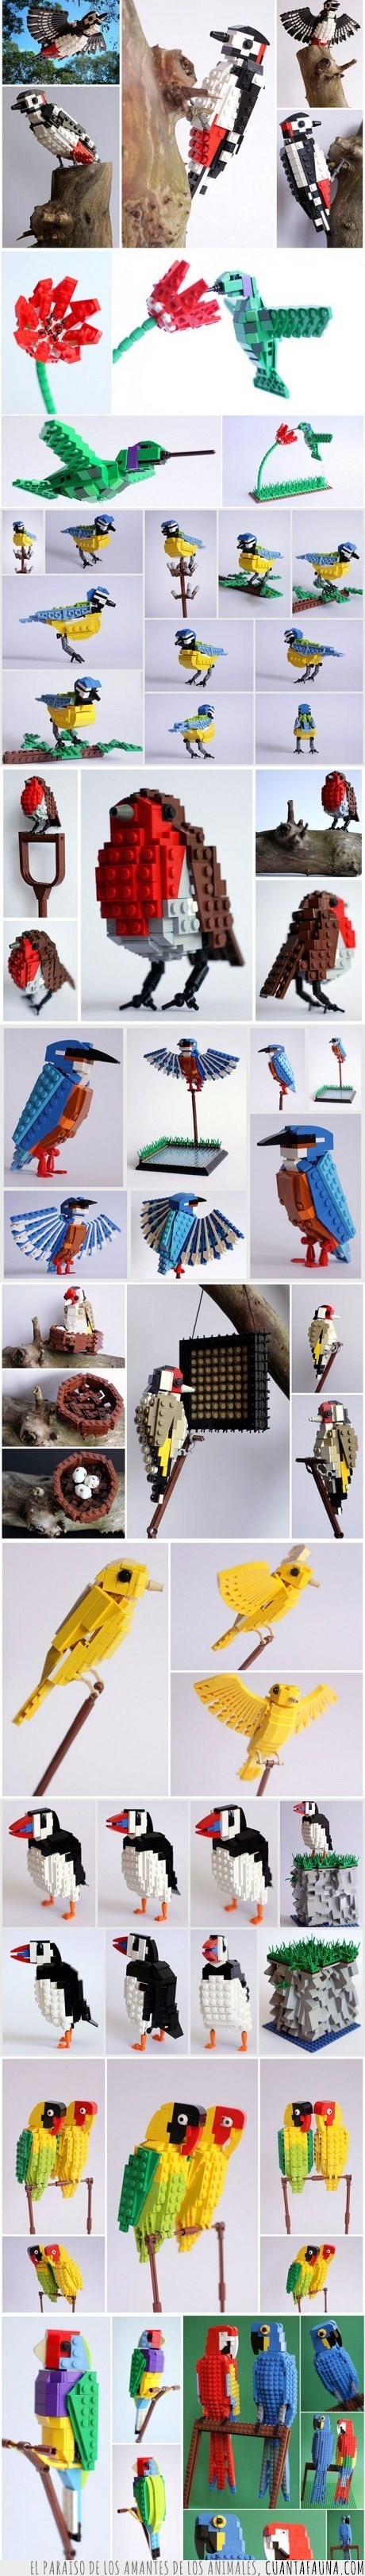 17448 - LEGOS - También en Pájaros